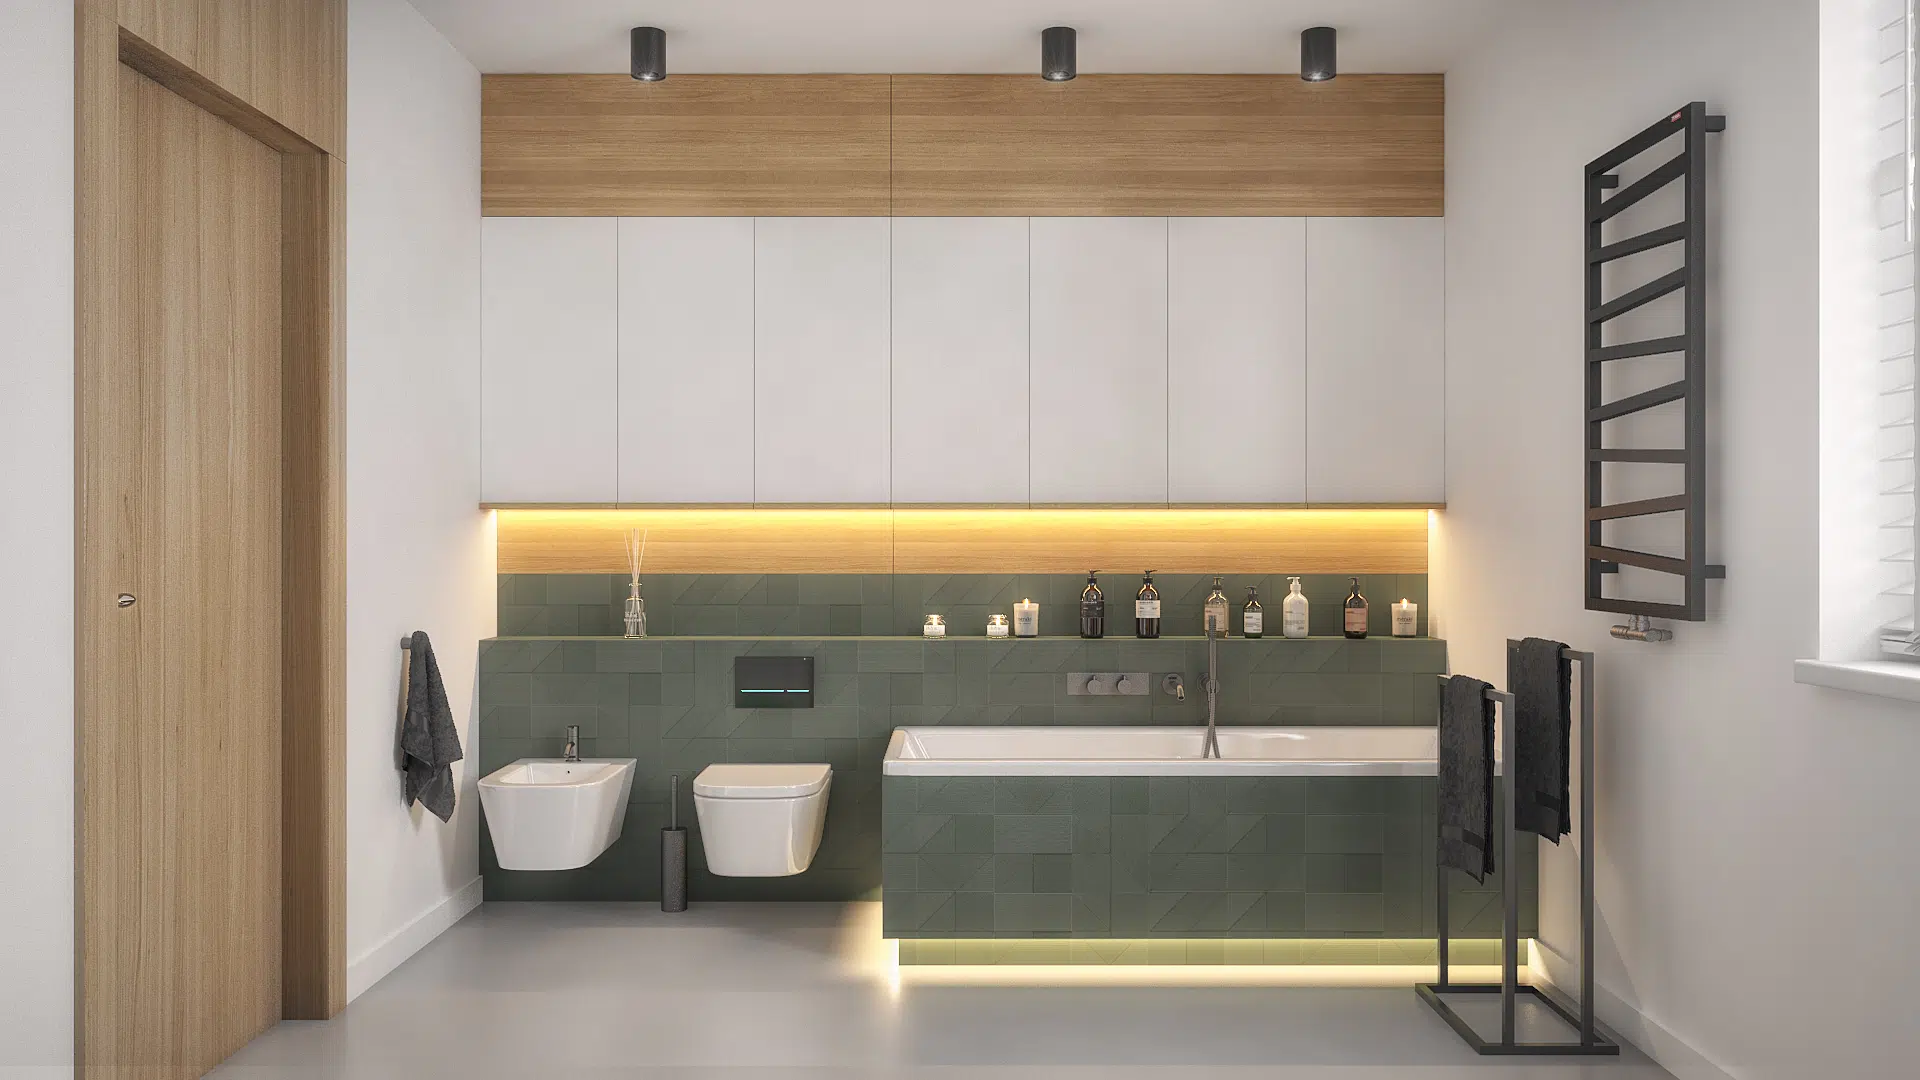 Nowoczesna łazienka w minimalistycznym stylu z kontrastującymi kaflami w kolorze zielonym i nastrojowym podświetleniem LED